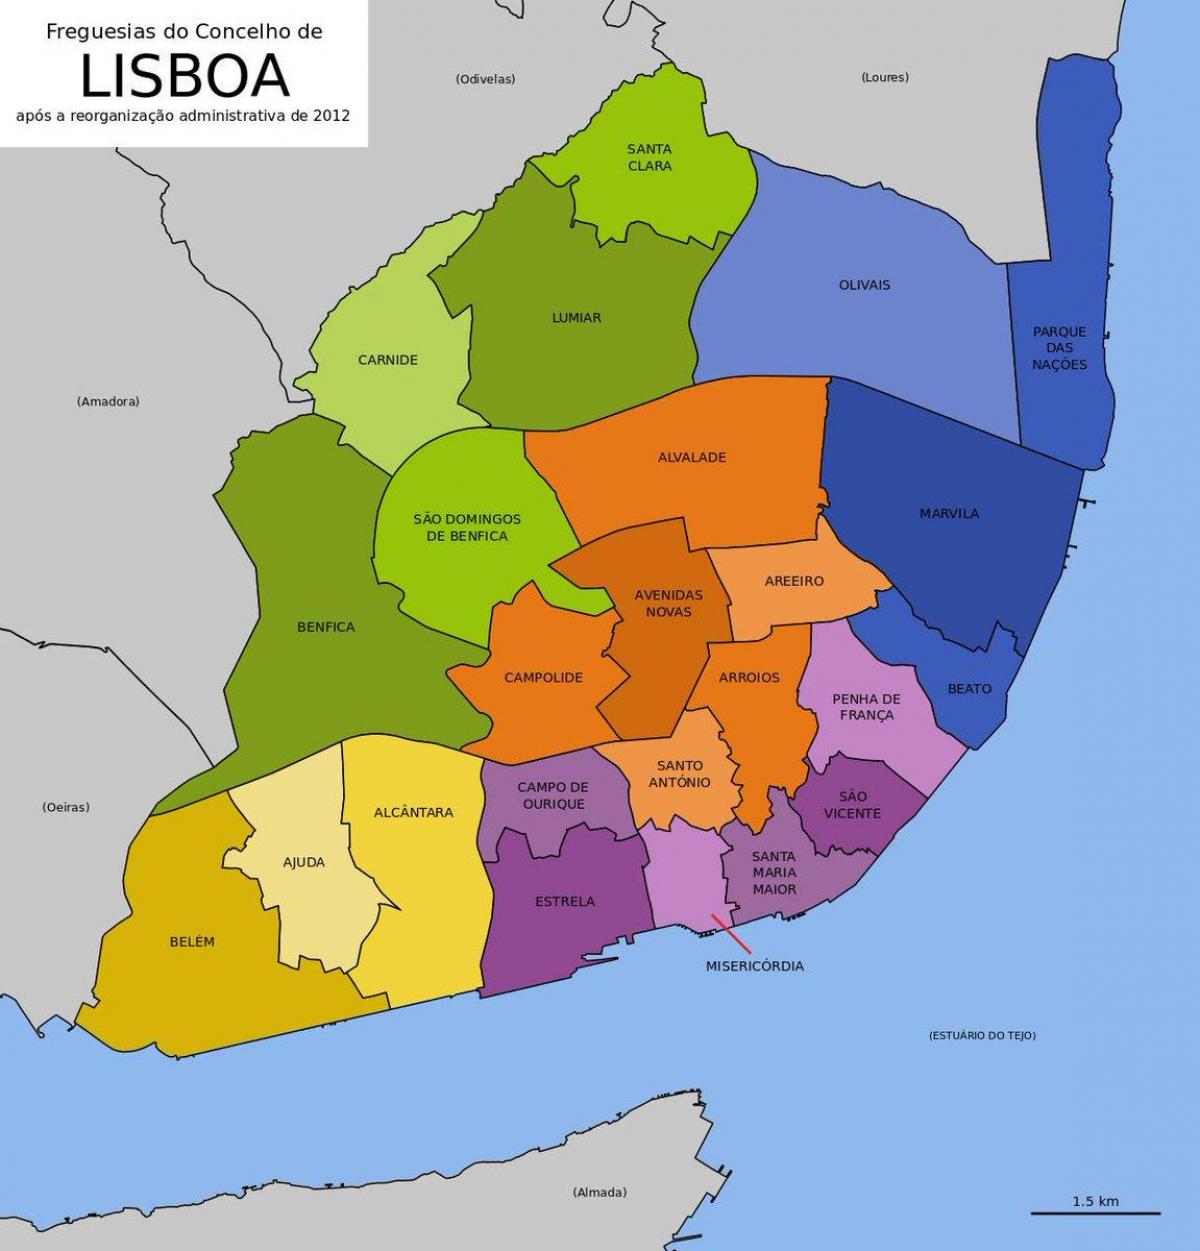 The Lisbon Neighborhood Map